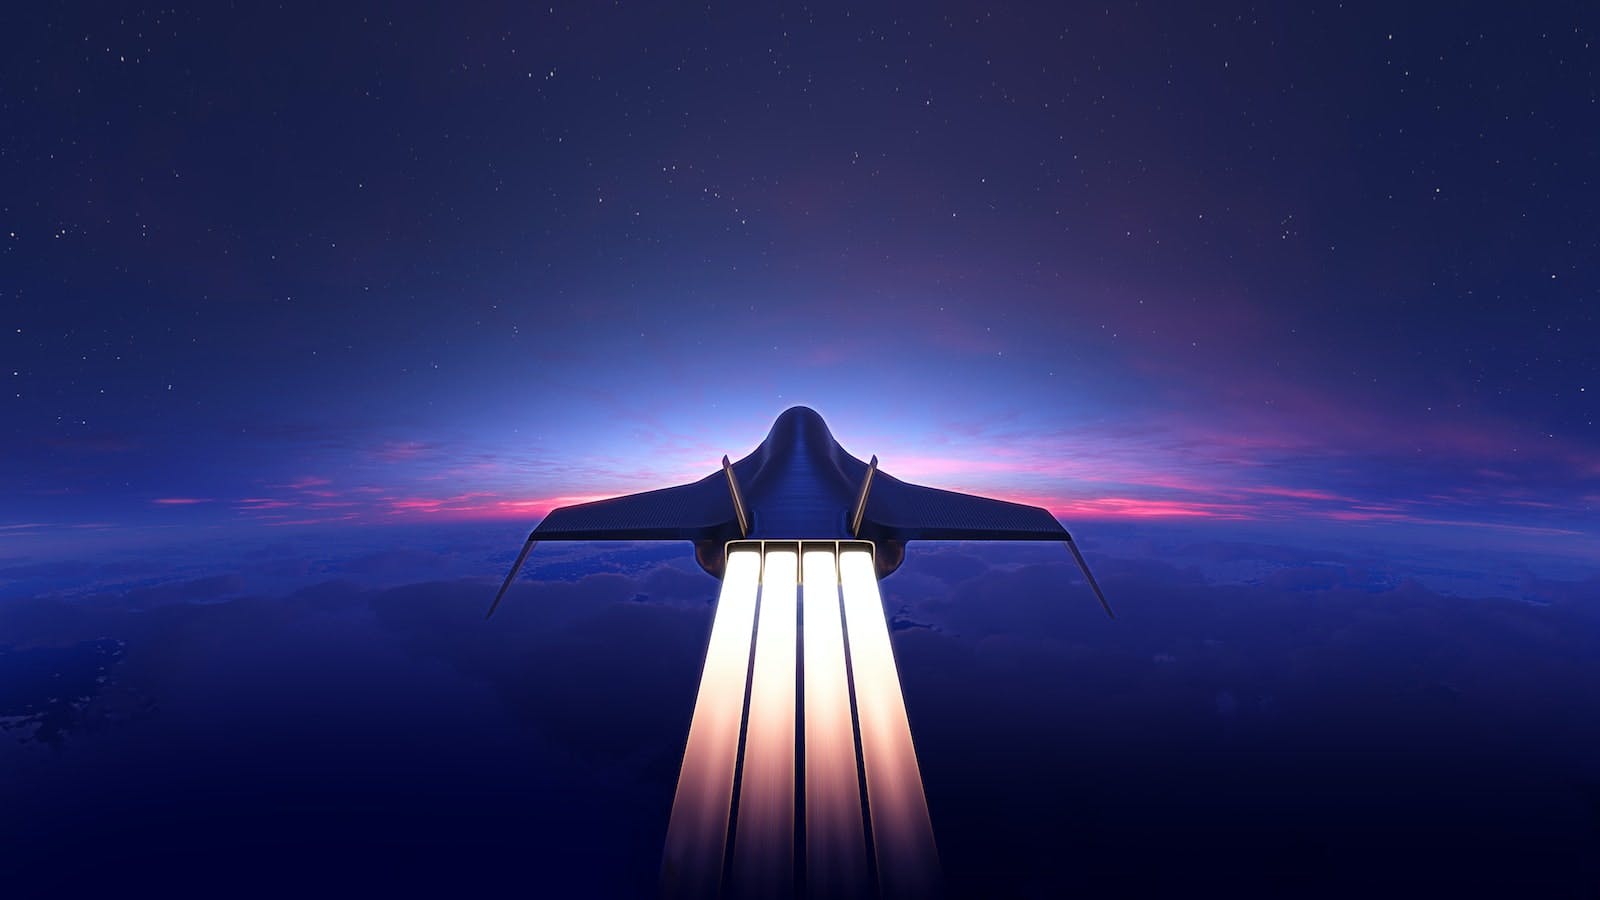 Artist depiction of hypersonic passenger aircraft.